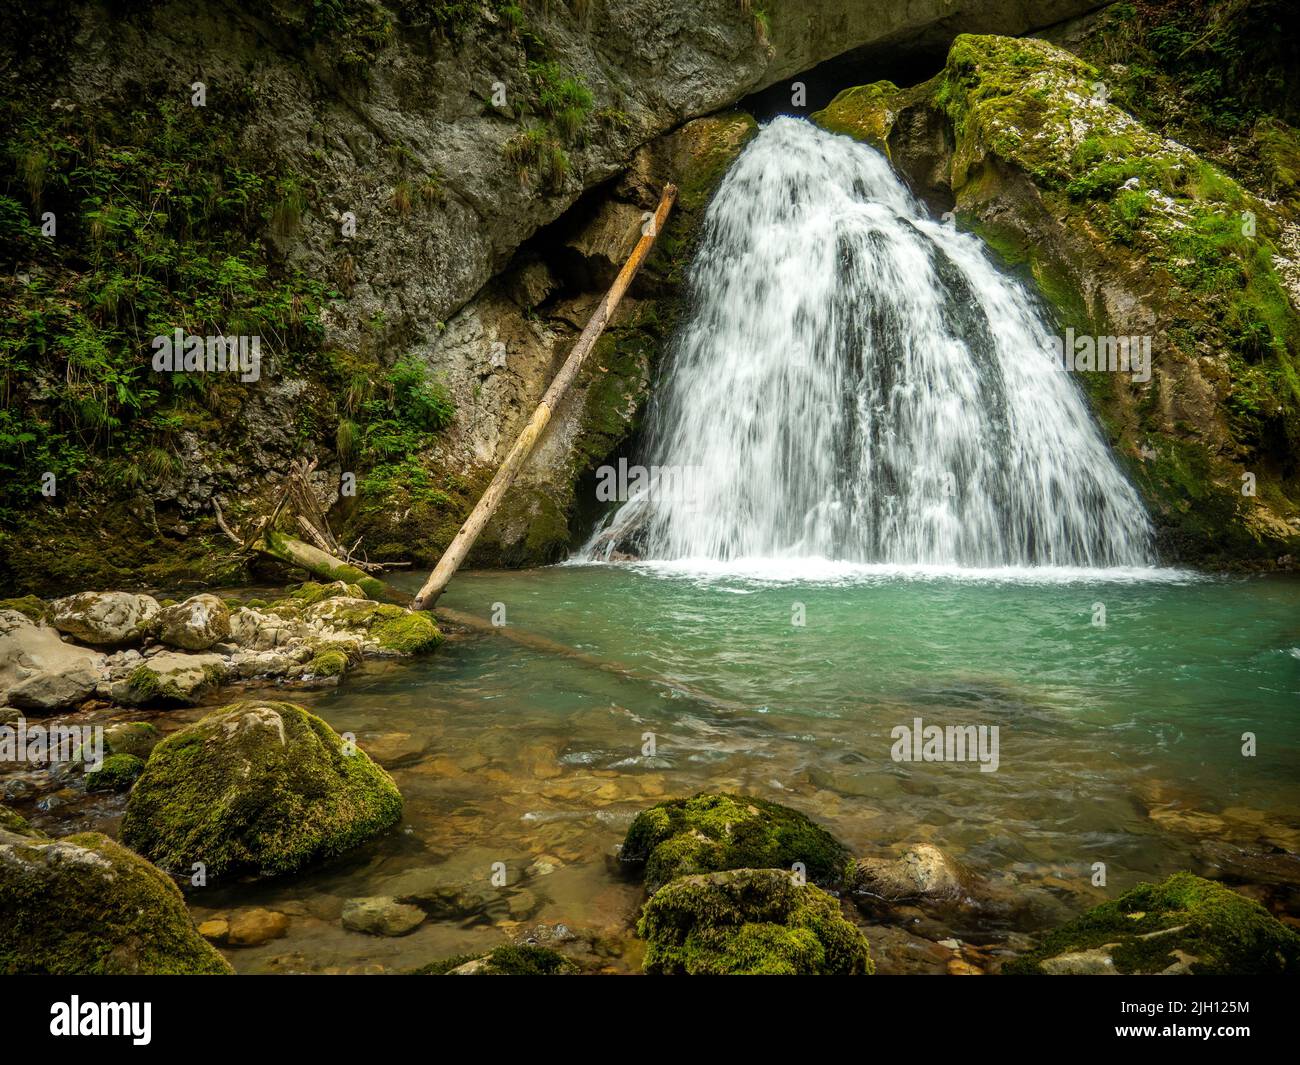 Cascade d'Eventai dans le canyon de Galbena, Transylvanie, Roumanie, montagnes carpathes occidentales, parc national d'Apuseni Banque D'Images